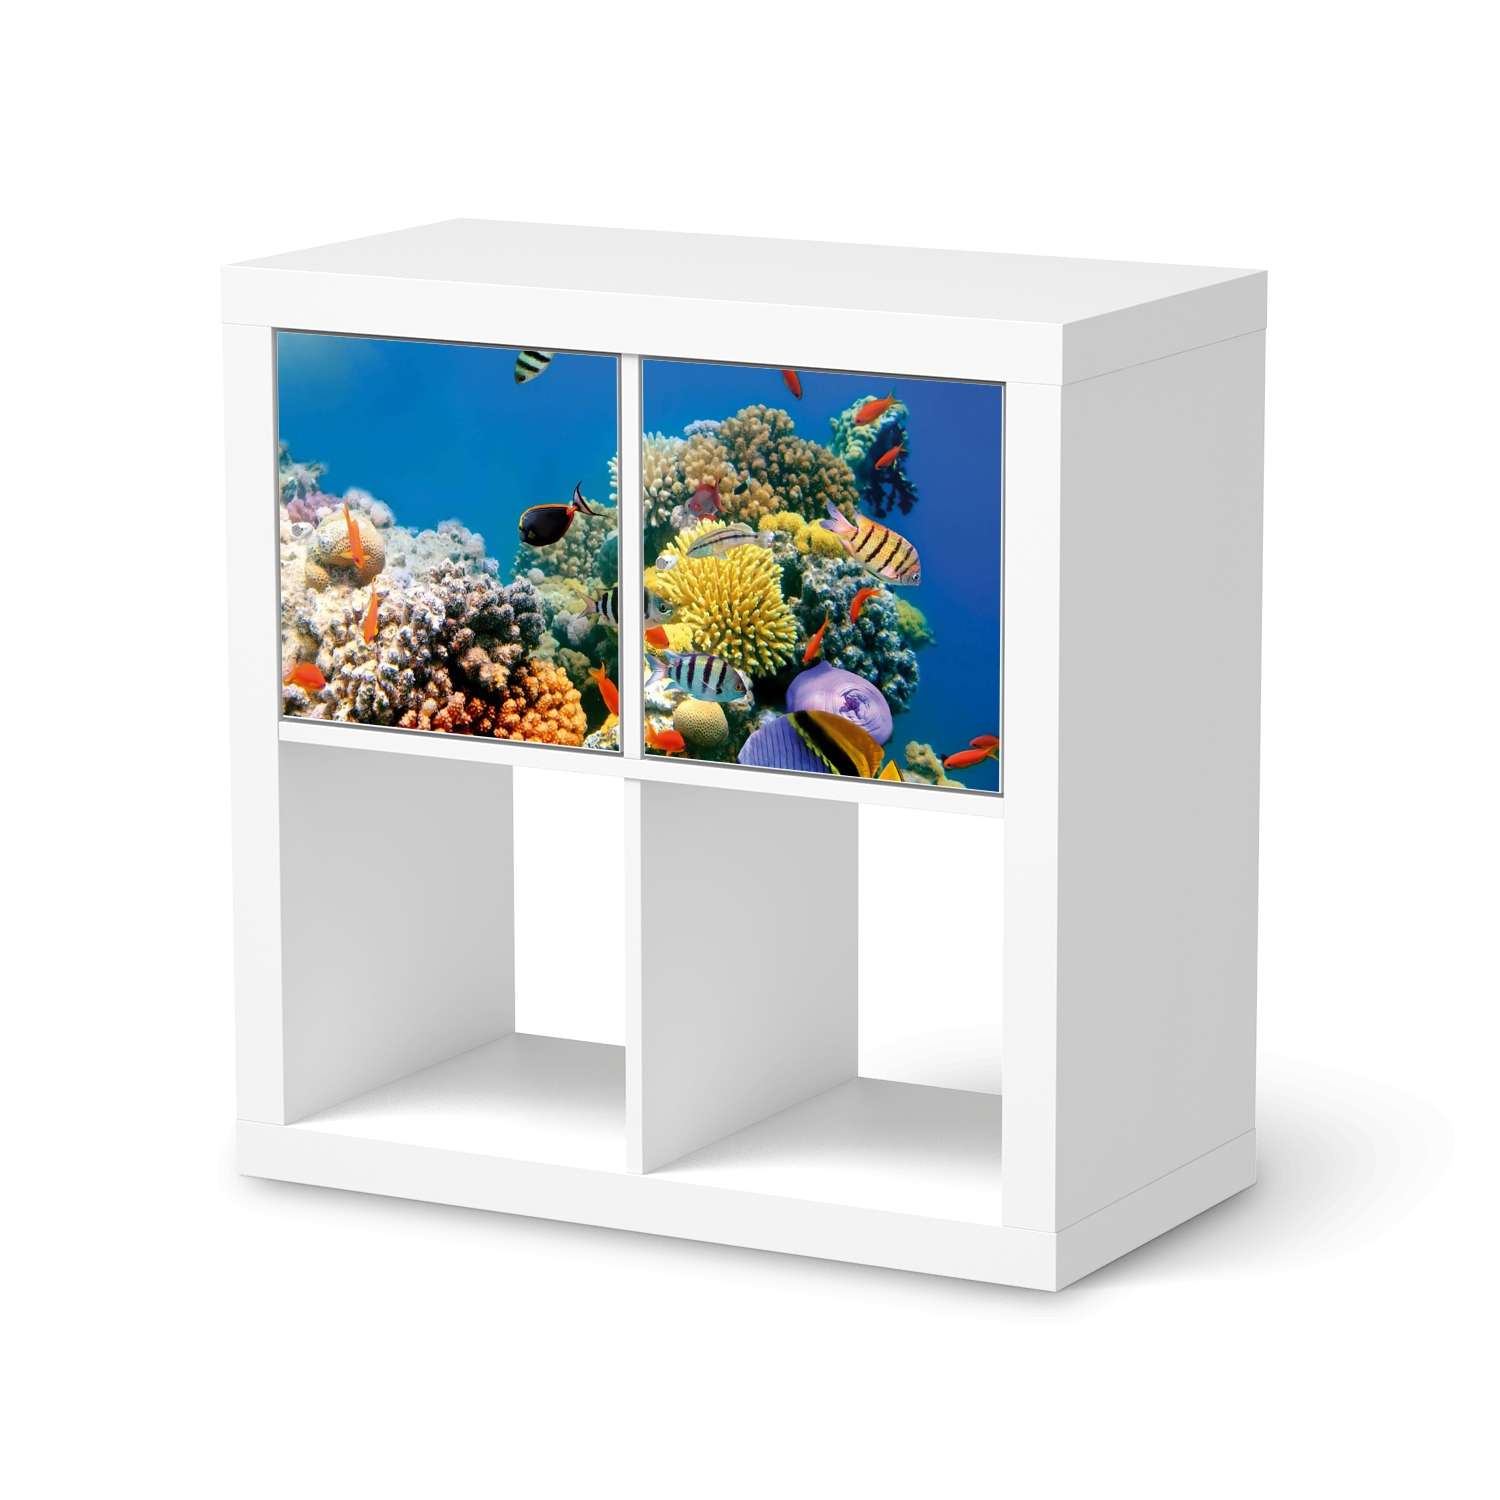 M?belfolie IKEA Kallax Regal 2 T?ren (quer) - Design: Coral Reef von creatisto